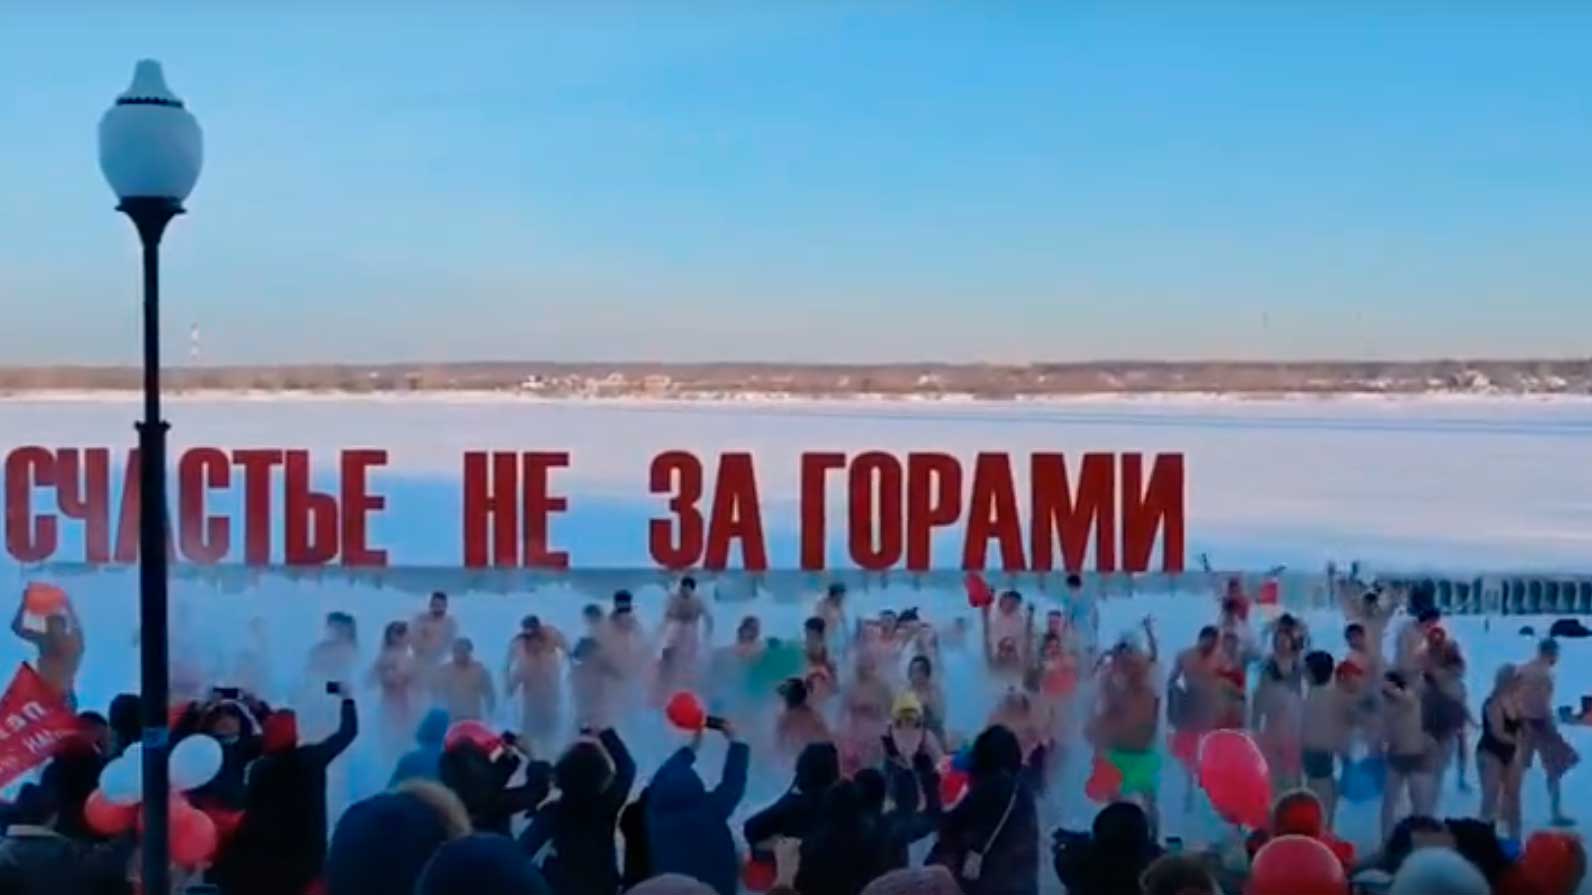 Подробнее о "Жители Перми устроили массовое обливание холодной водой"